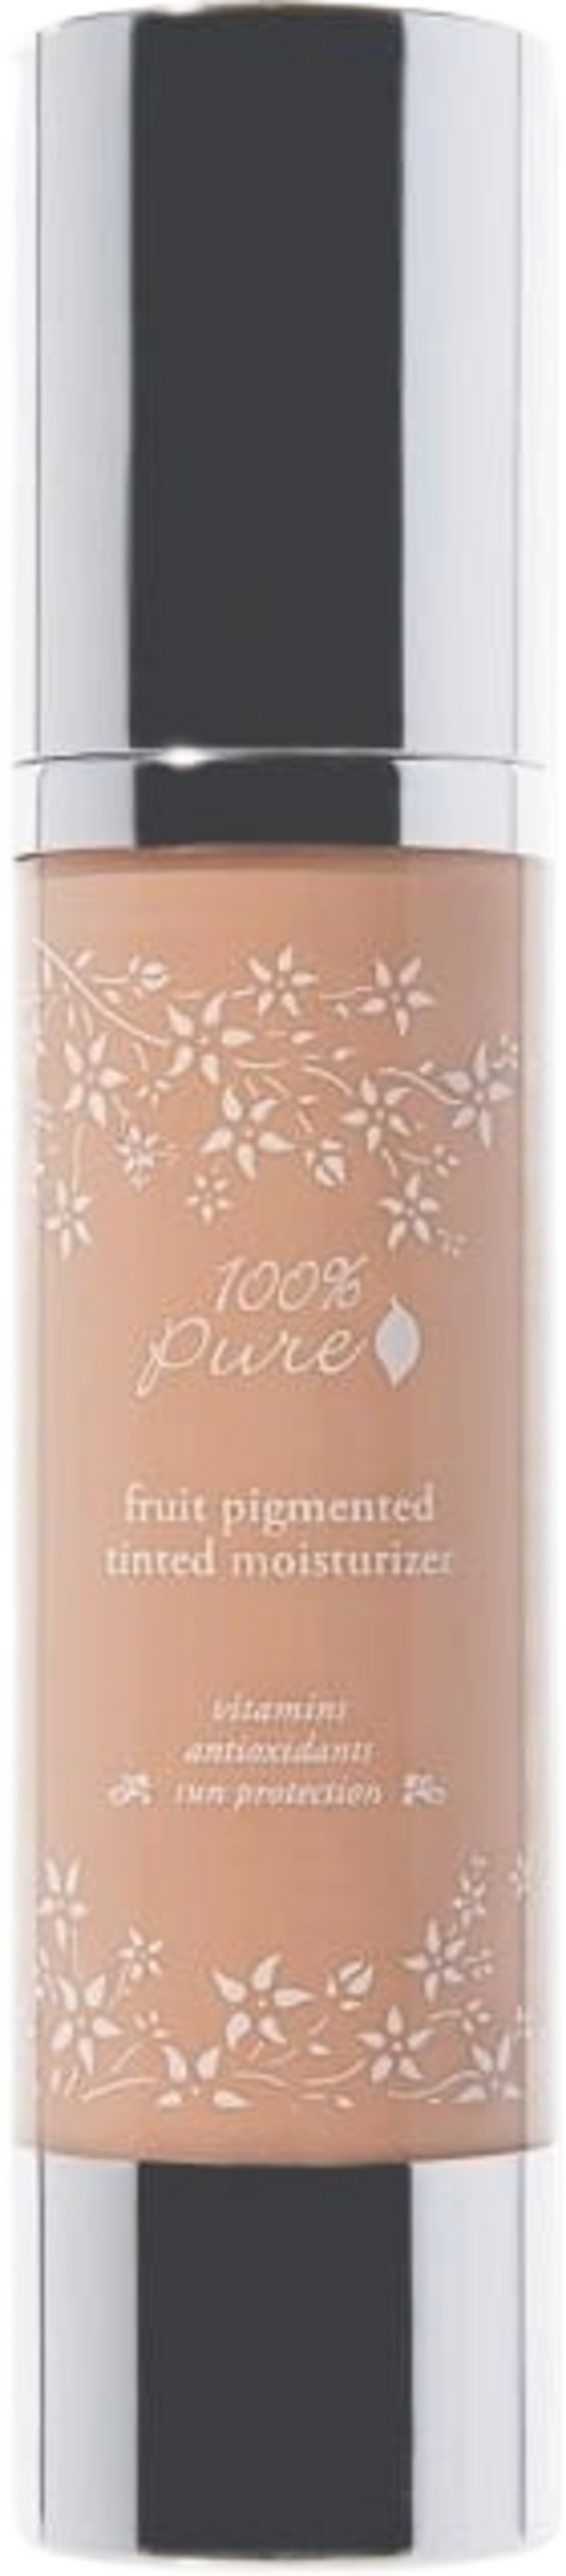 100% Pure Fruit Pigmented Színezett hidratáló - Golden Peach (deep medium)